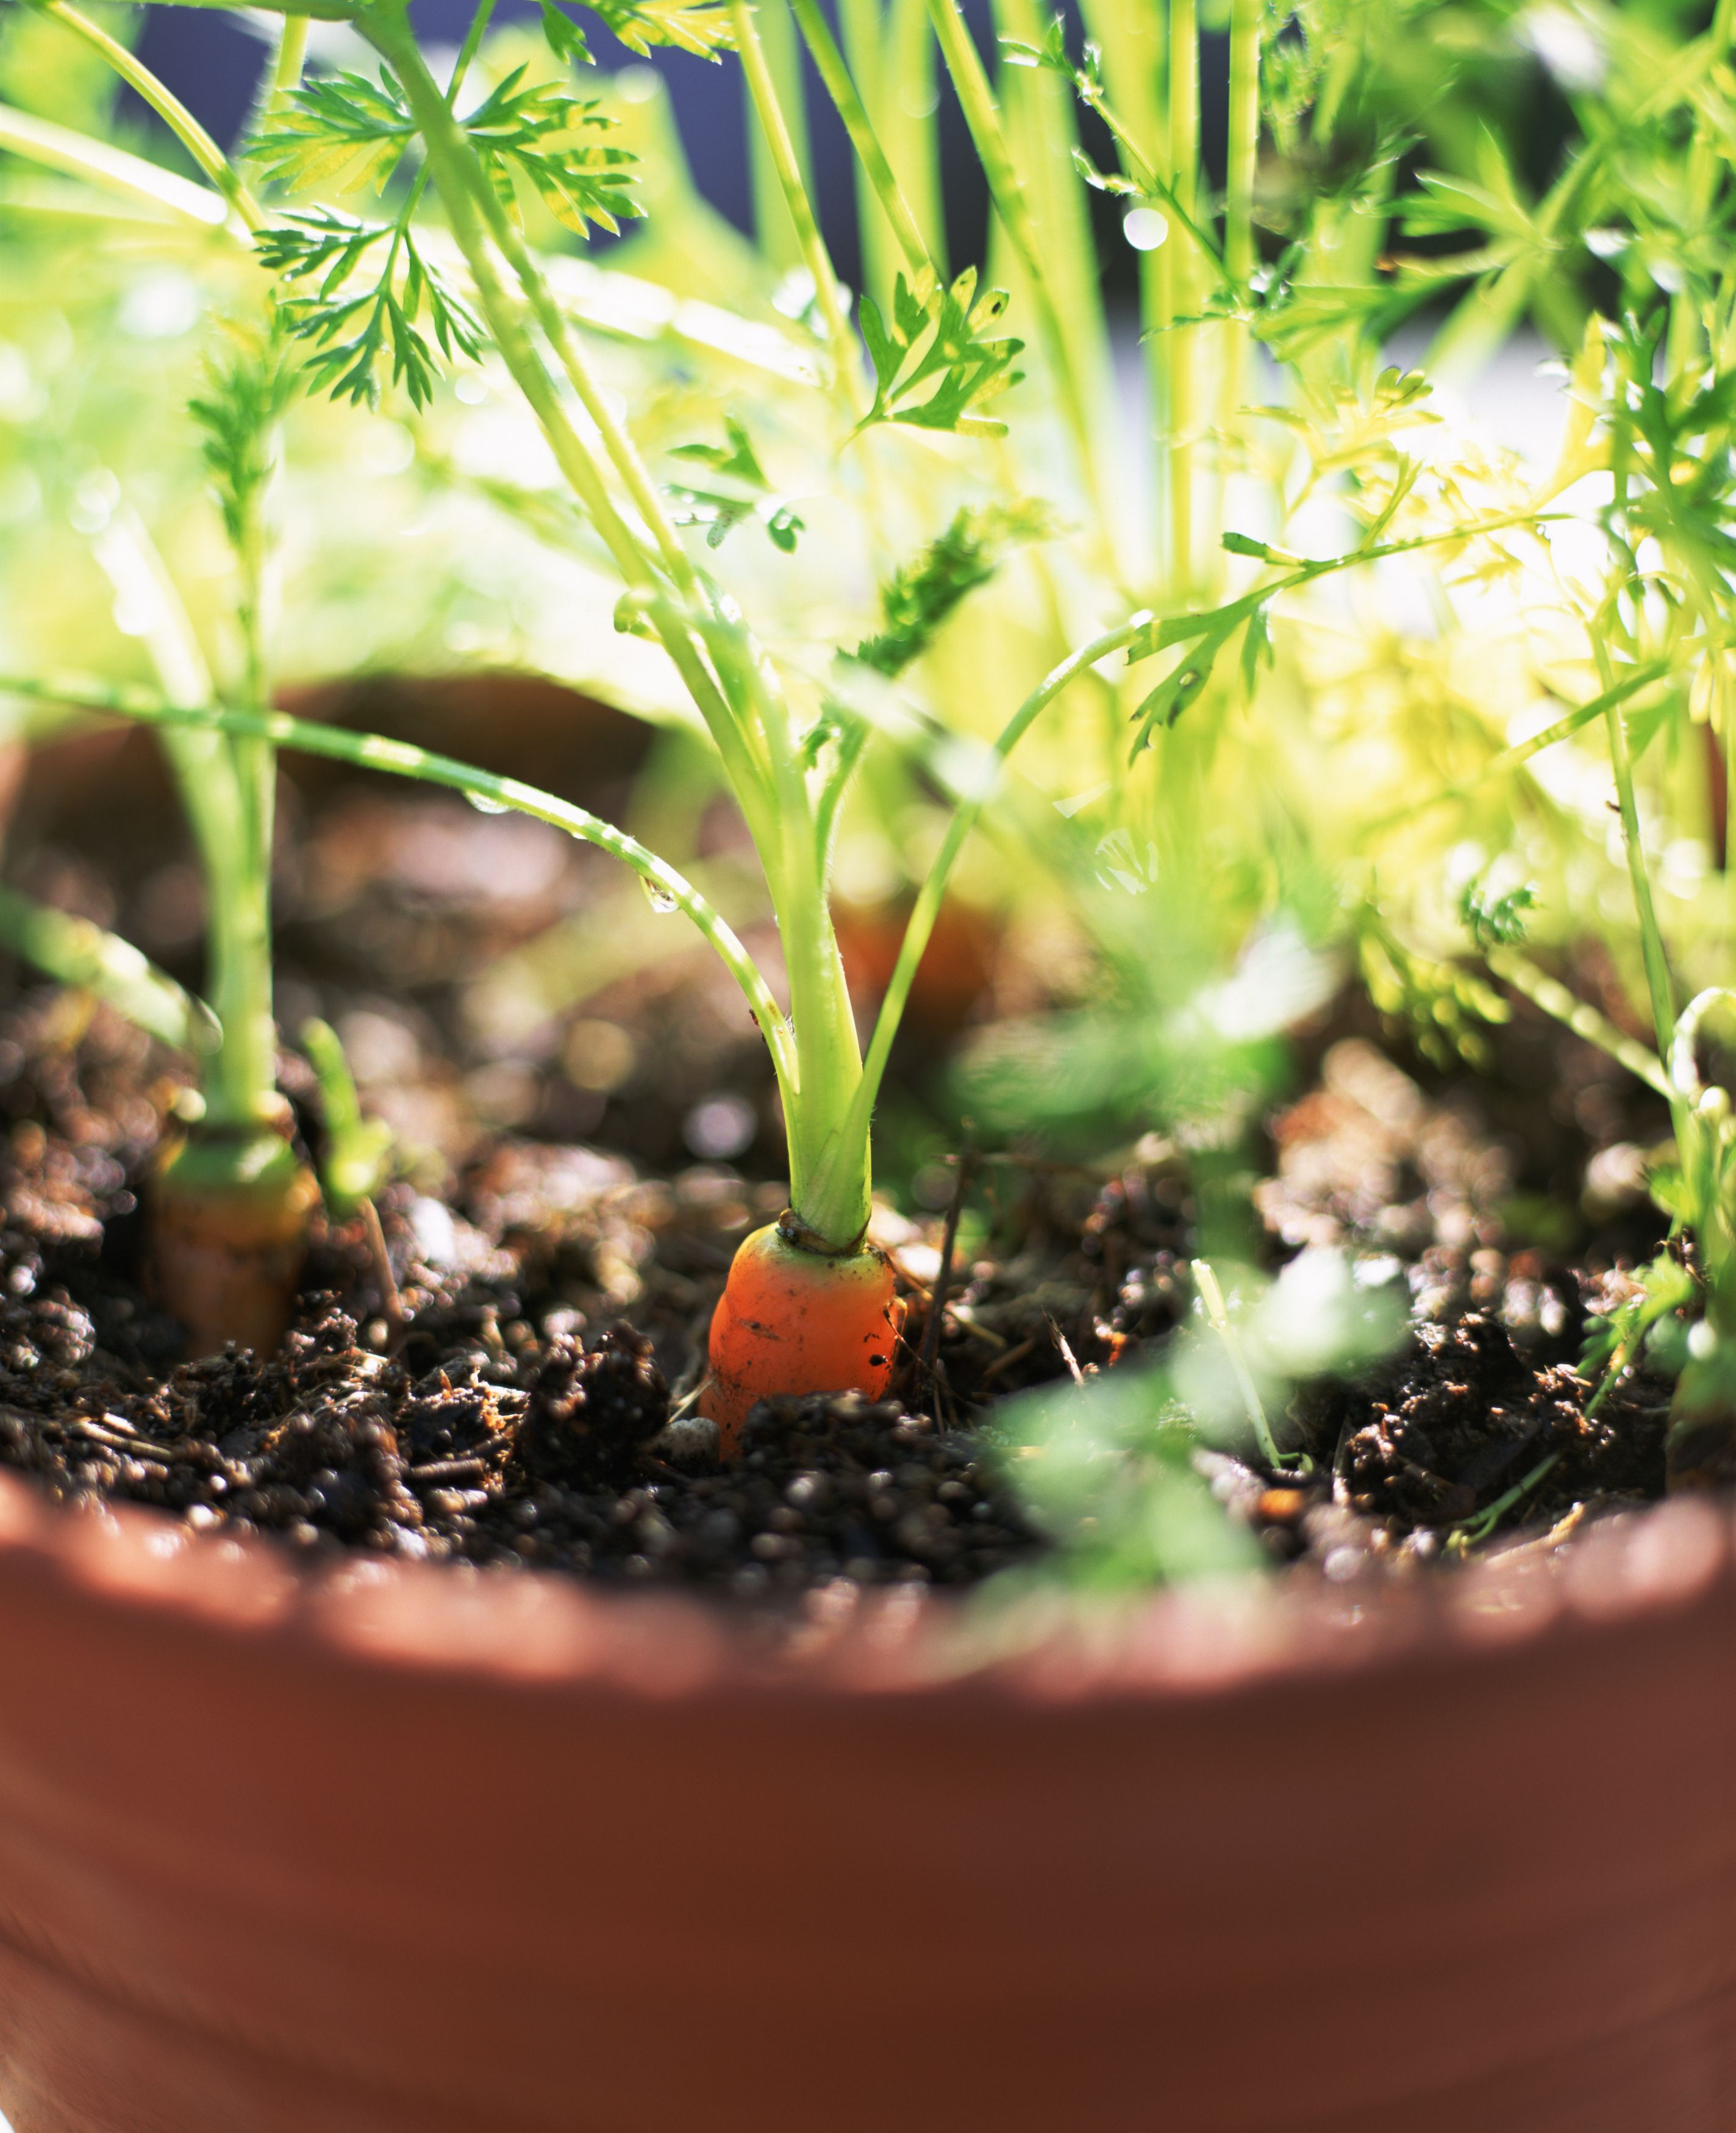 9 Tips for Indoor Vegetable Gardening